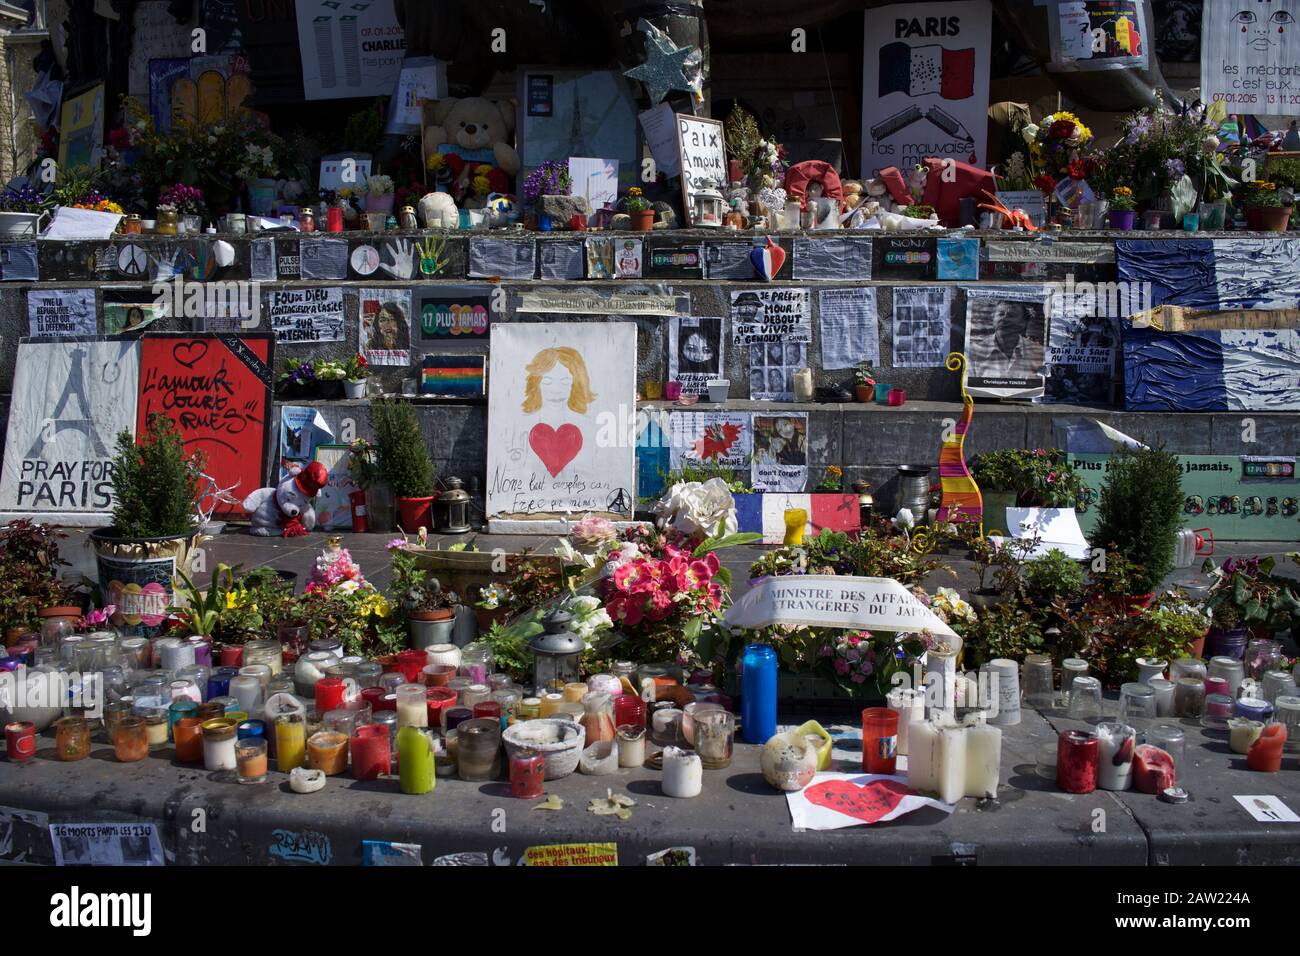 Messaggi scritti a mano, candele e fiori su gradini della statua di Marianne, dopo gli attacchi terroristici di Parigi, Place de la République, Parigi, Francia - aprile 2016 Foto Stock